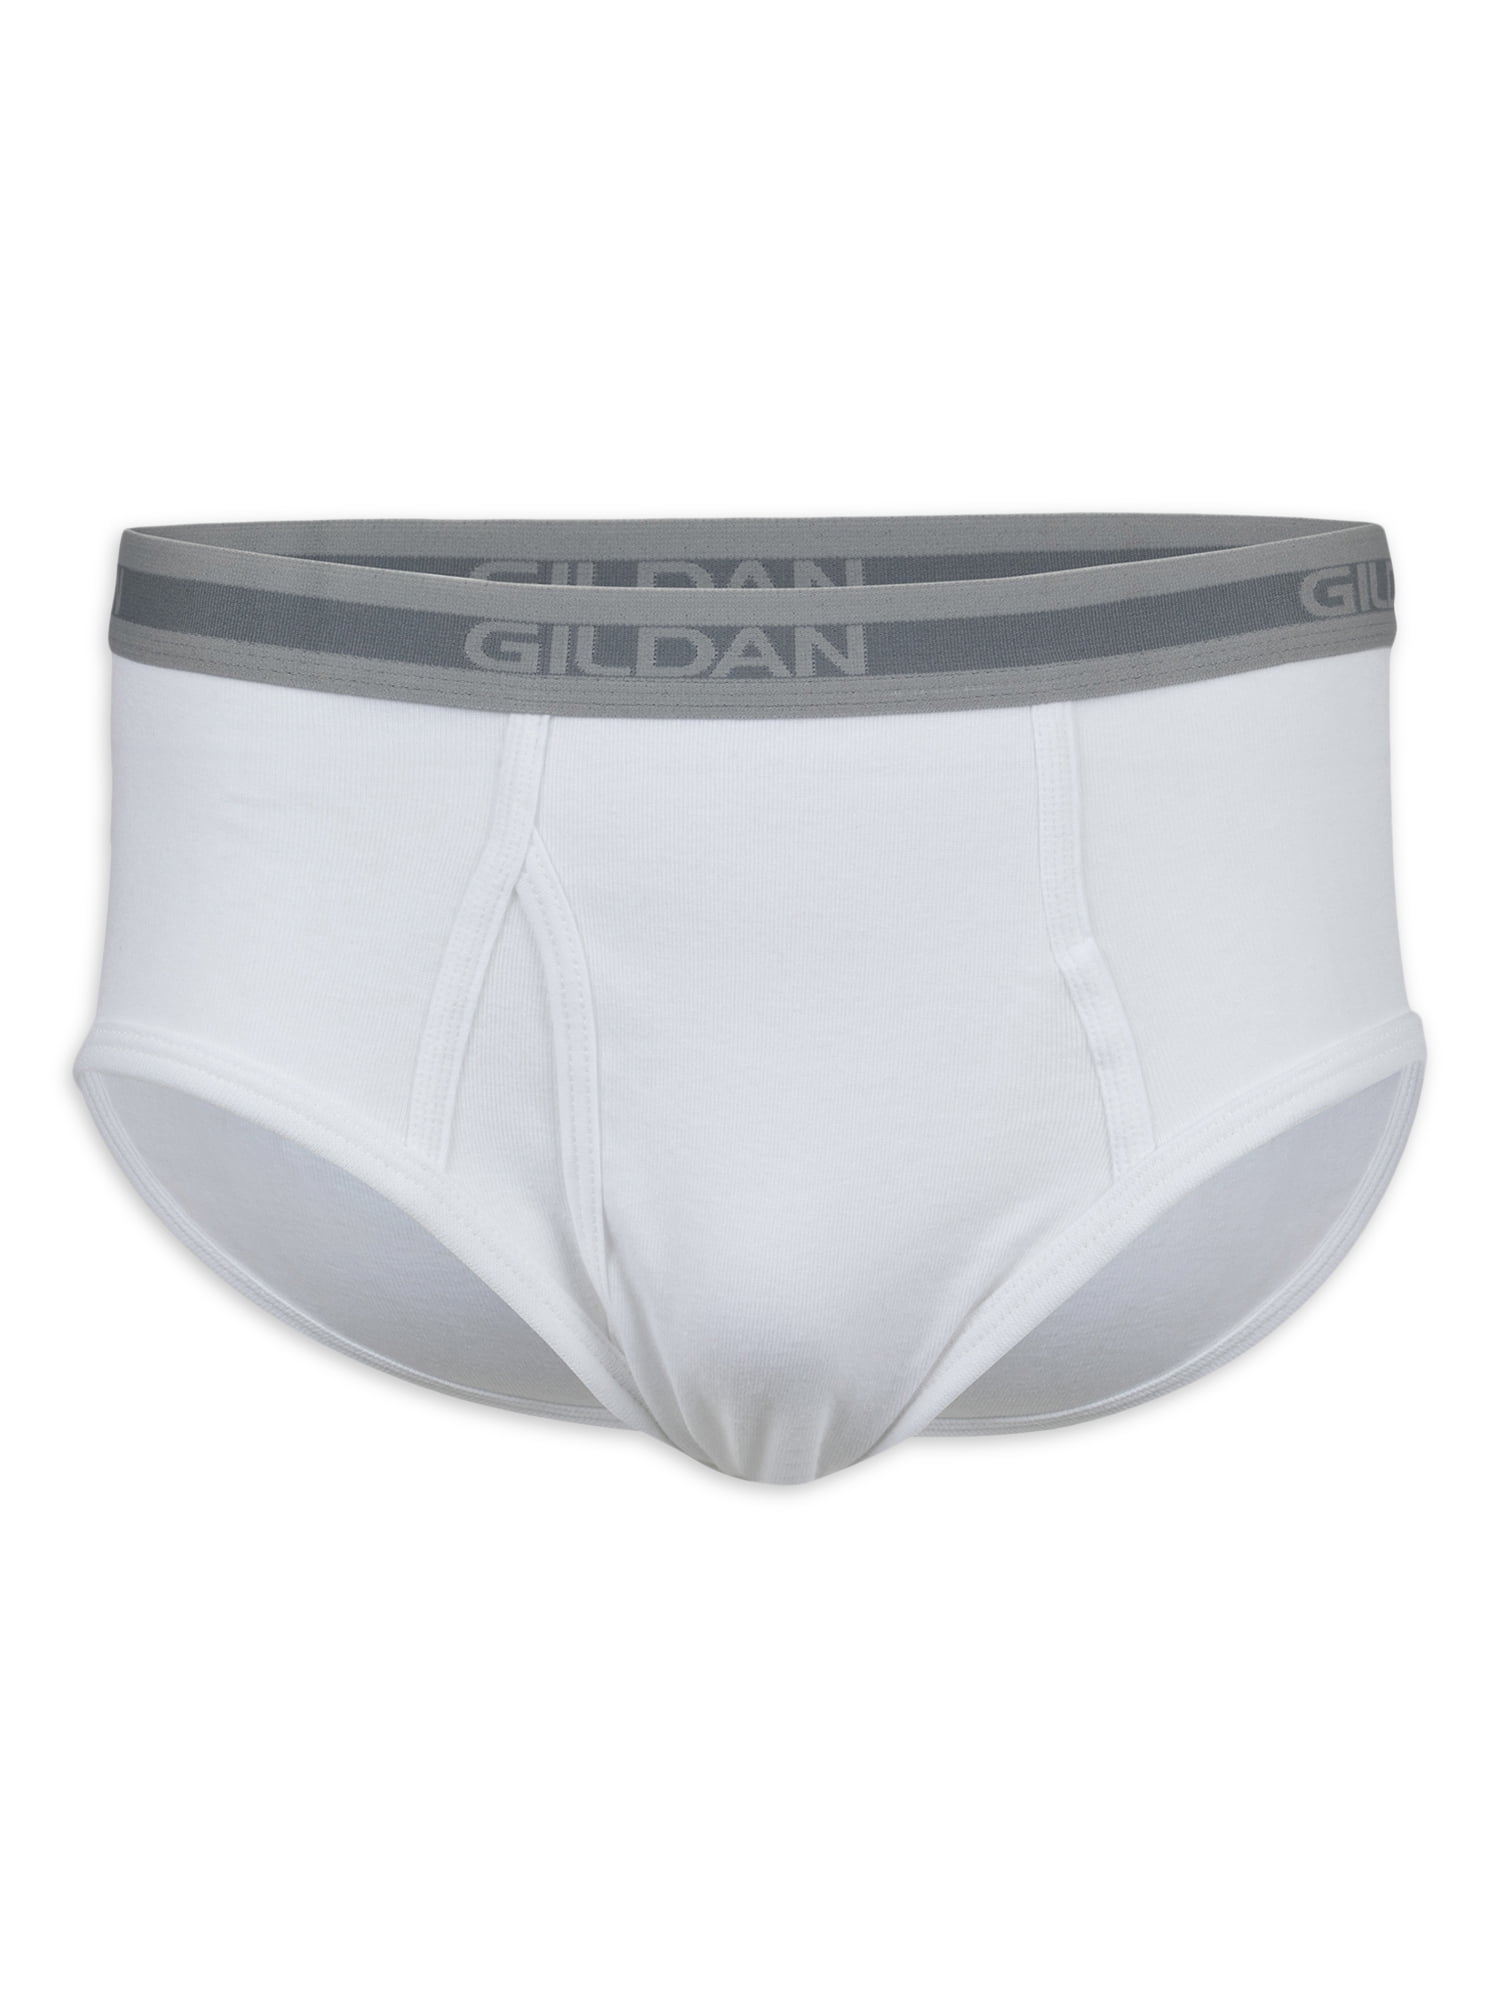 Gildan Adult Men's Premium Cotton Briefs, 6-Pack, Sizes S-2XL 